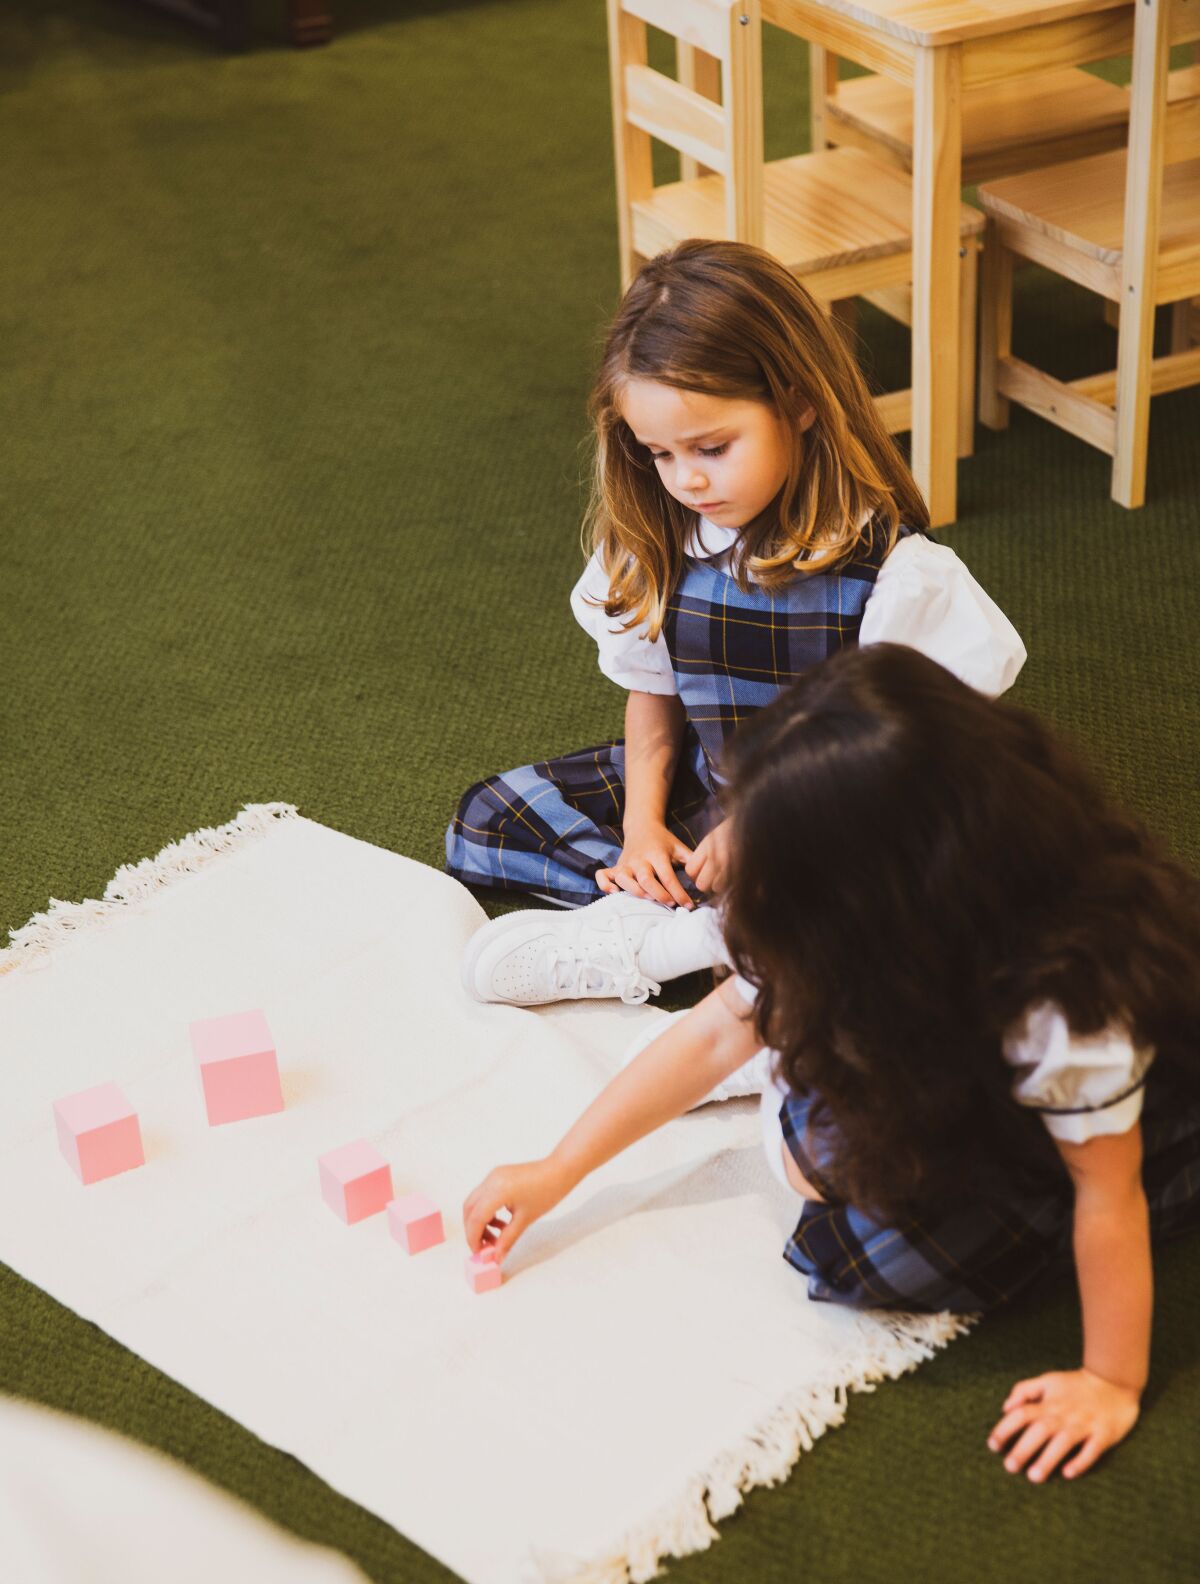 In Montessori schools, children work on the floor rather than at desks.